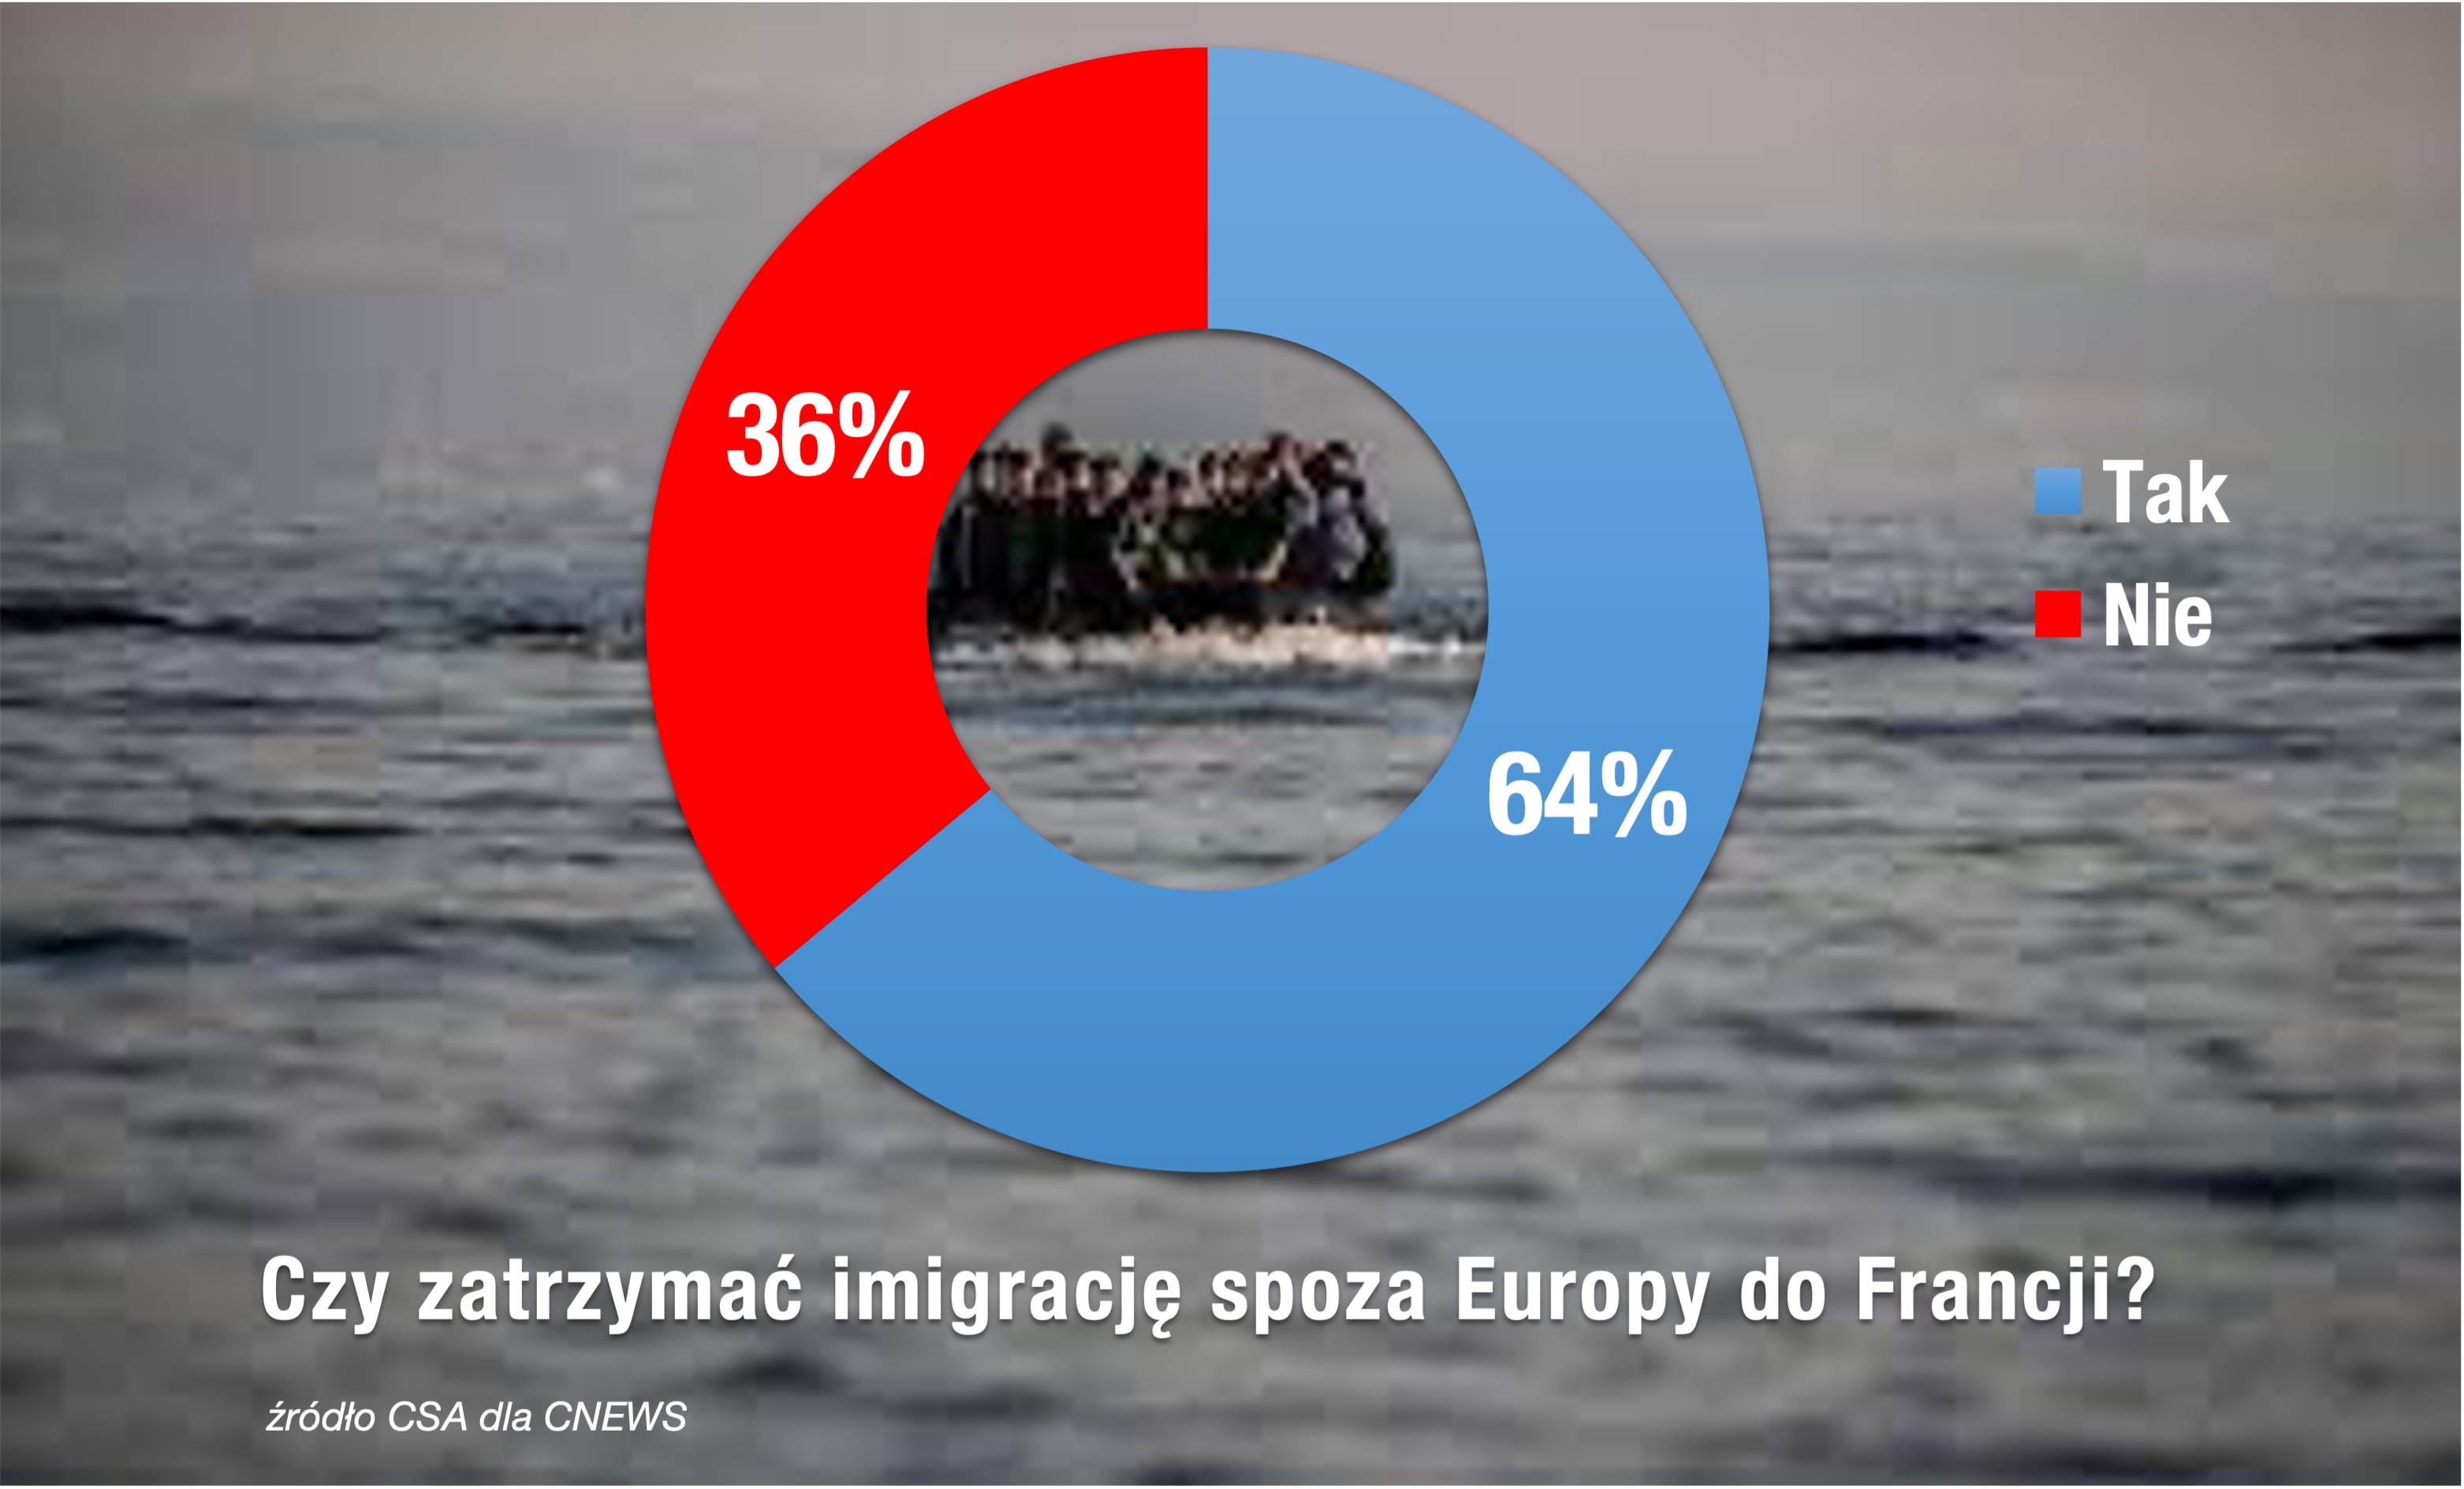 Czy zatrzymać imigrację do Europy, sondaż we Francji CSA dla CNEWS